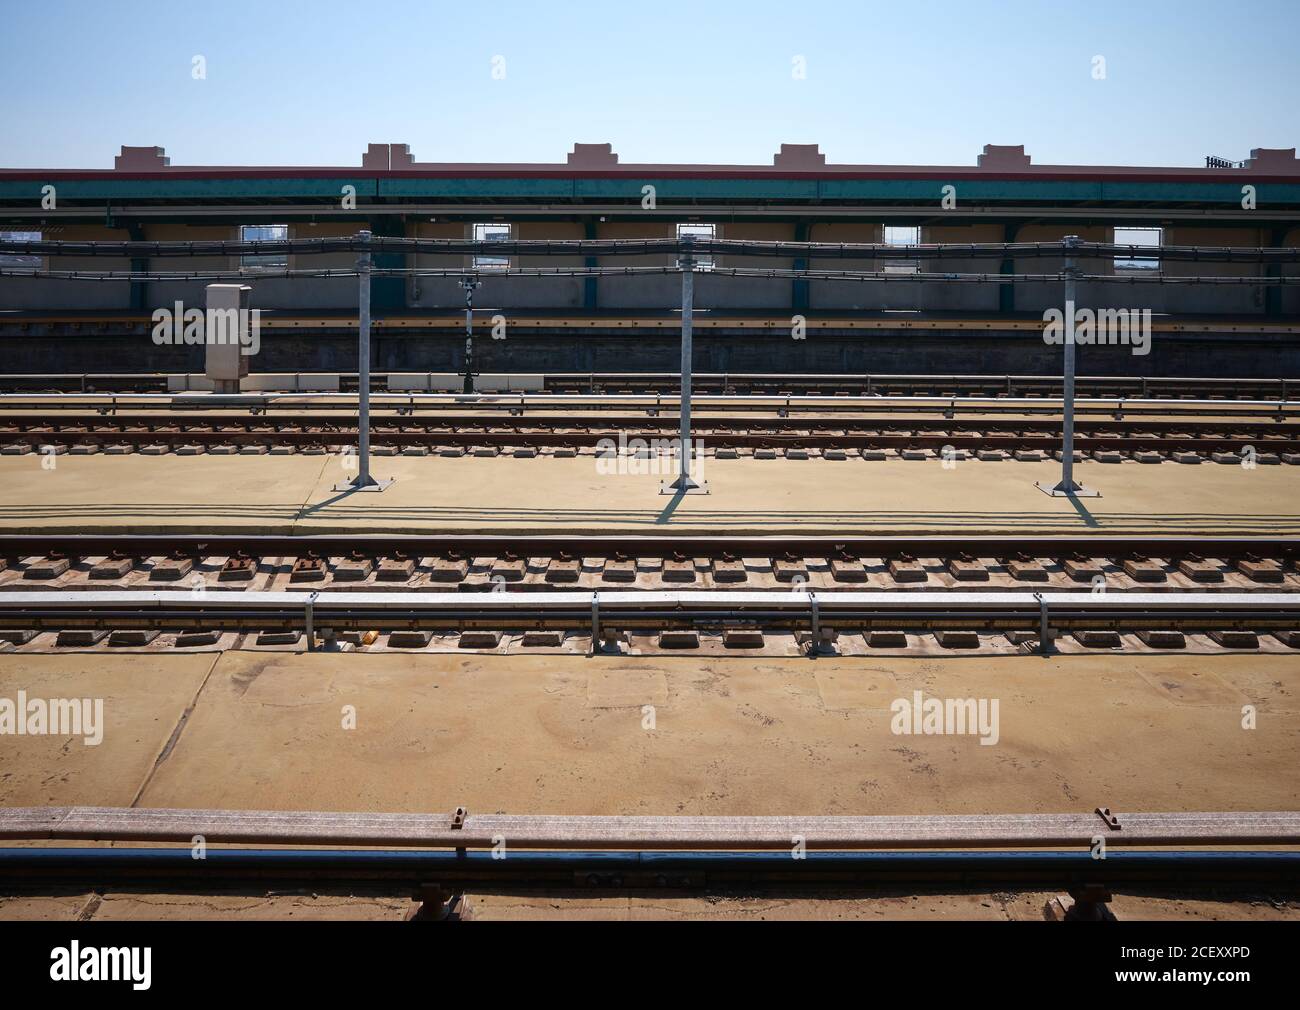 Station de métro New York City à Brooklyn Borough, Etats-Unis. Banque D'Images